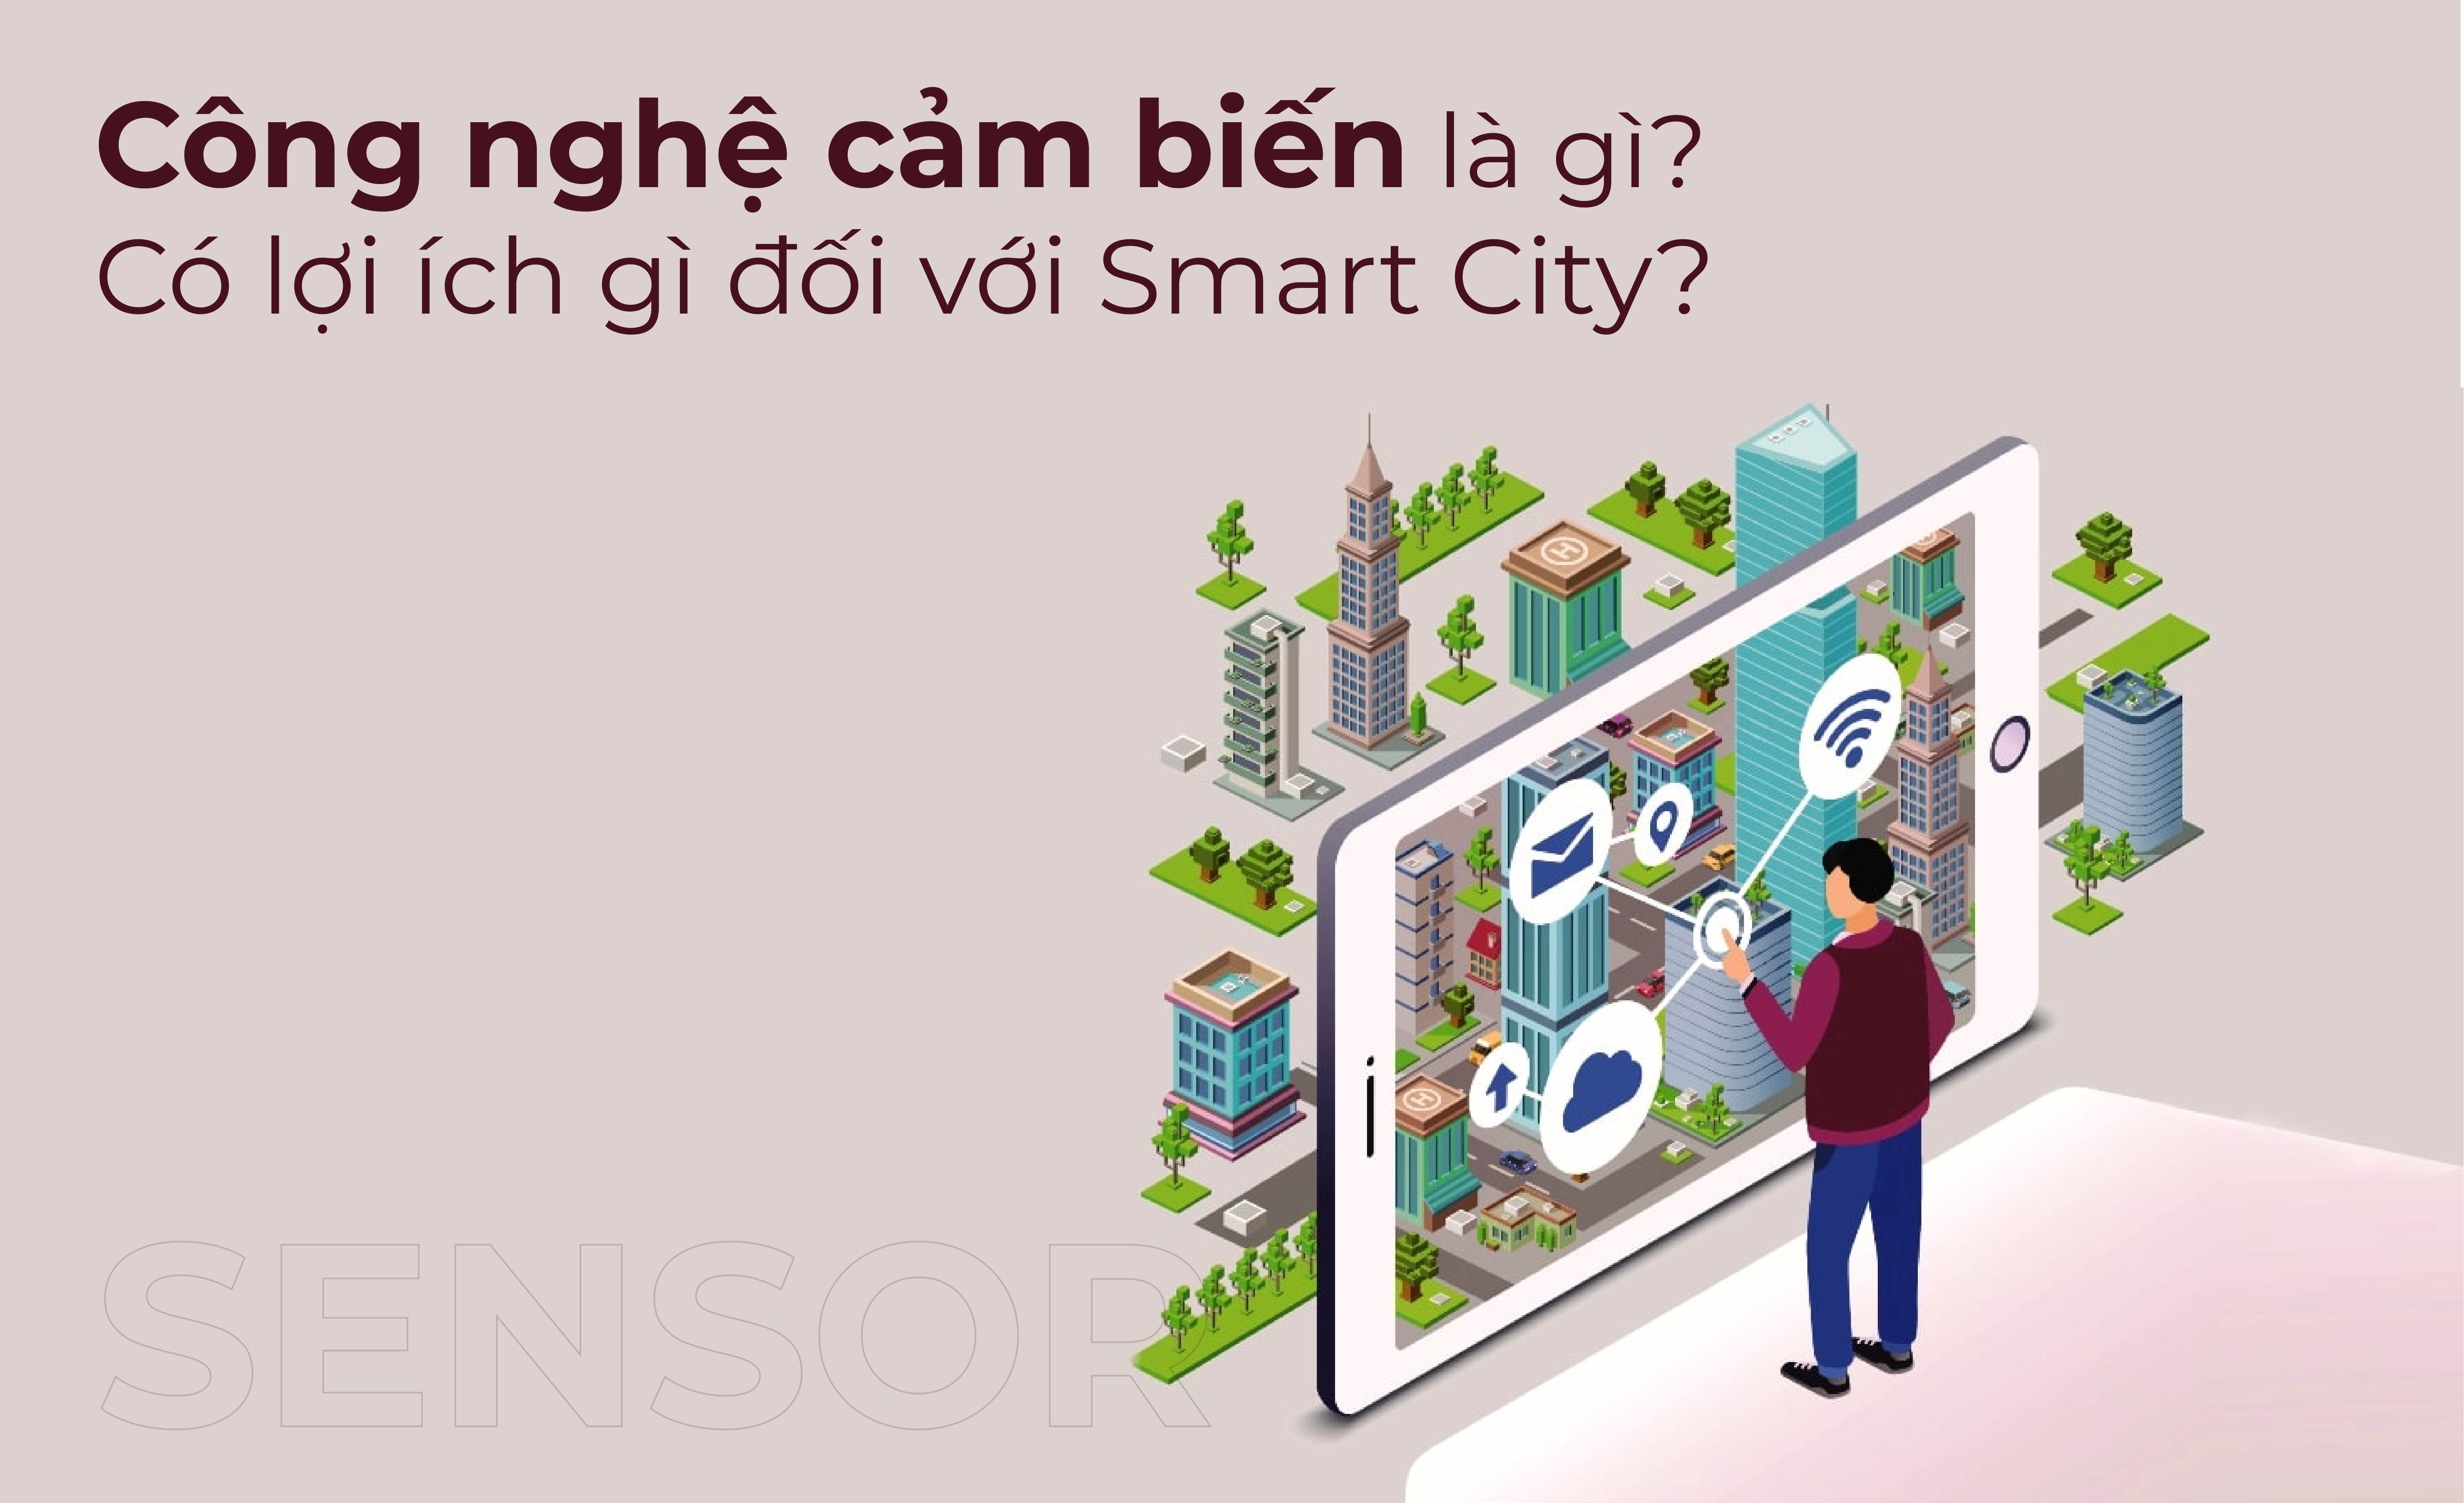 Công nghệ cảm biến là gì, có lợi ích gì đối với Smart City?